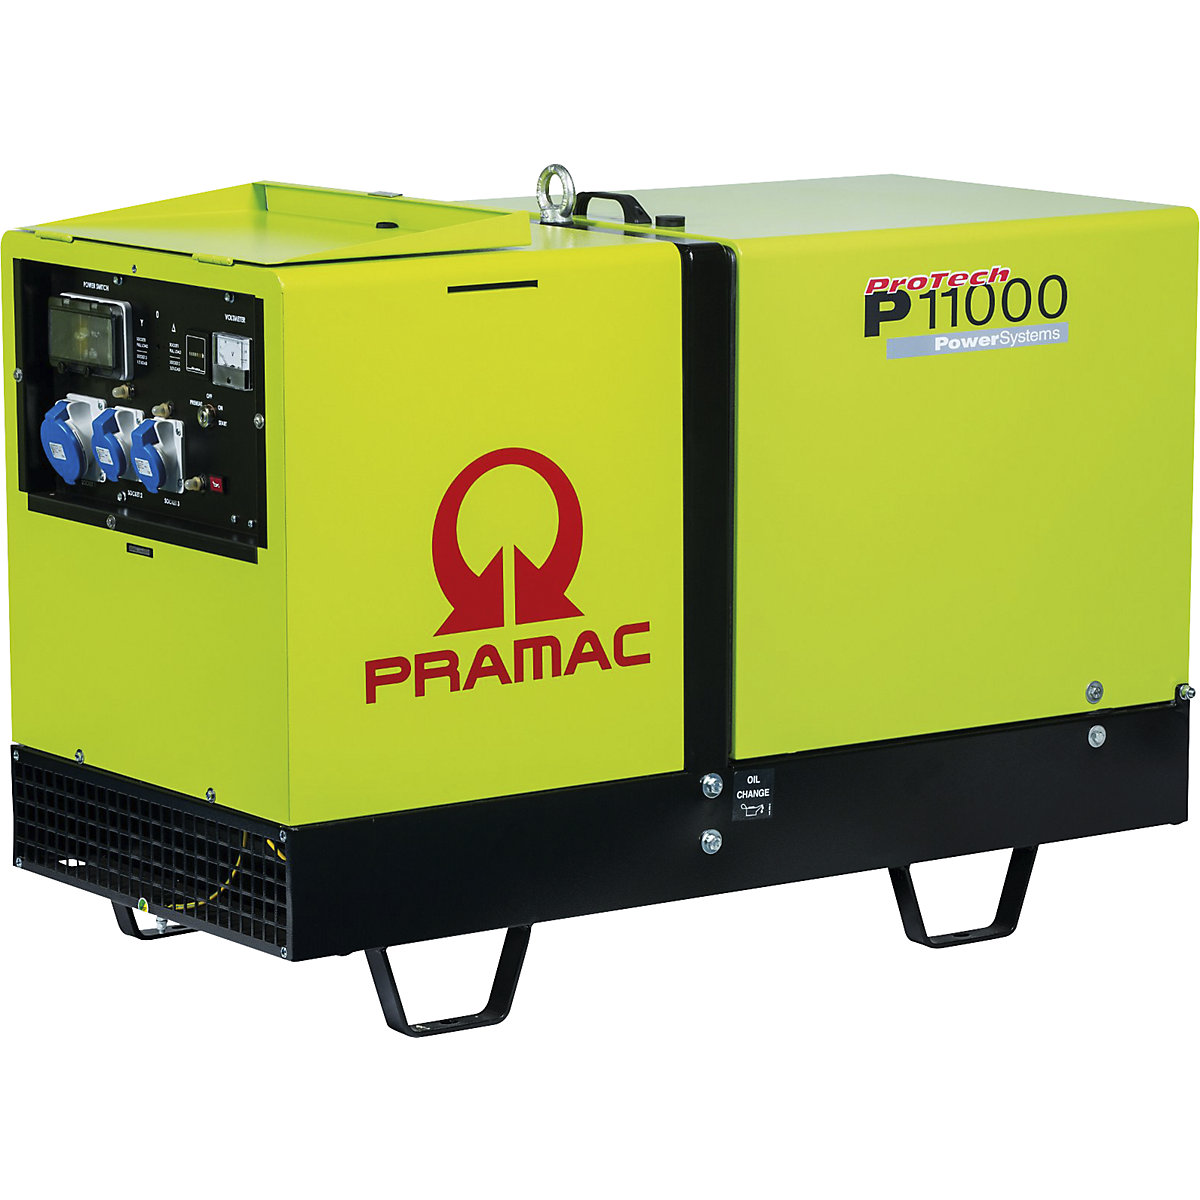 P series power generator, diesel, 230 V – Pramac